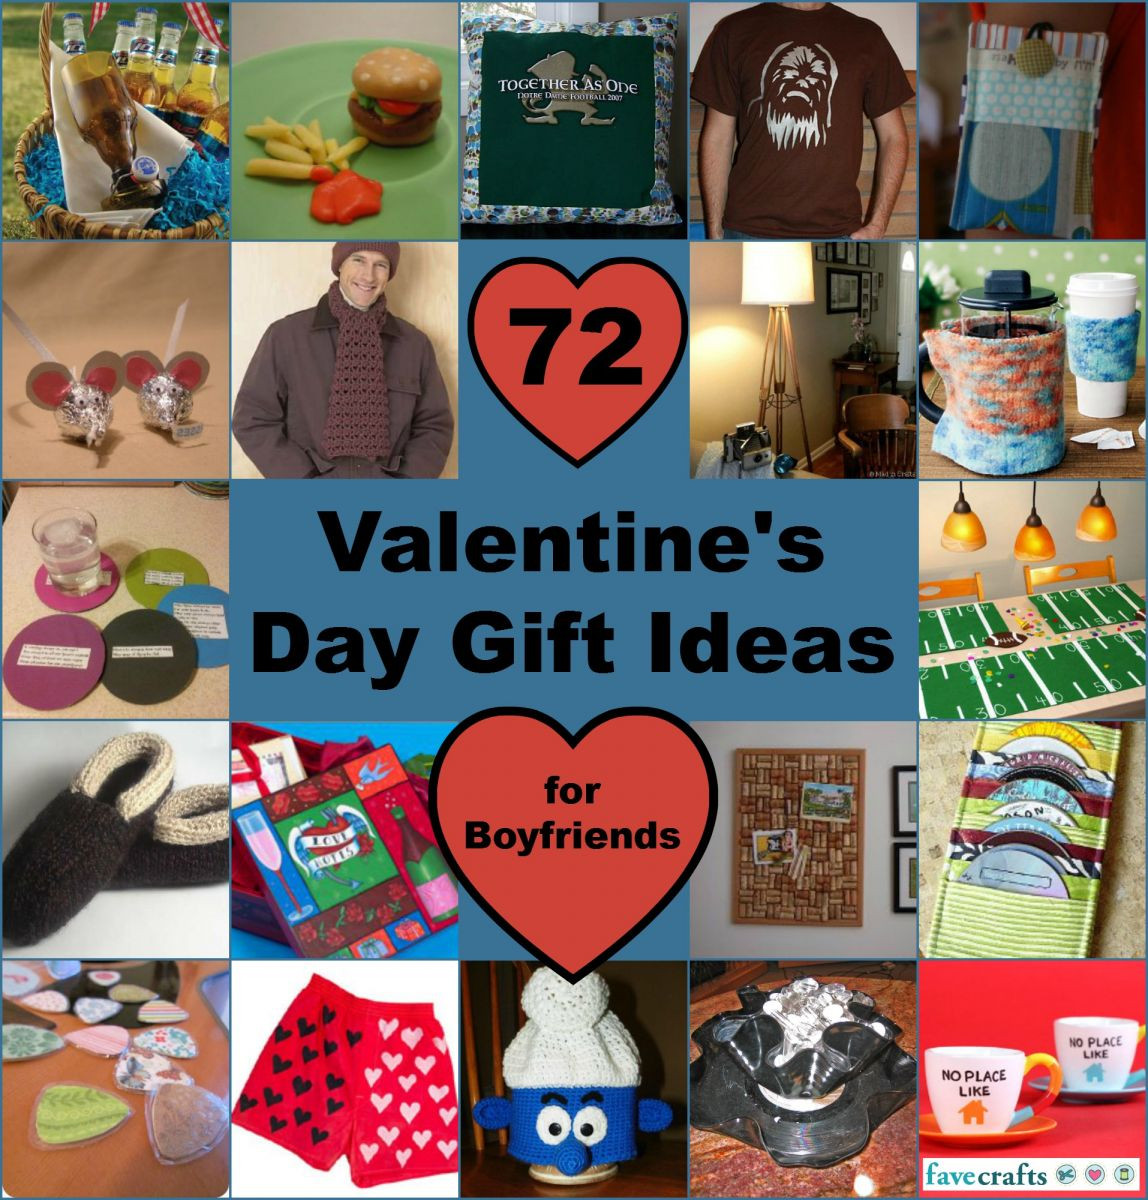 Valentines Gift Ideas Boyfriend
 Gift Ideas for Boyfriend